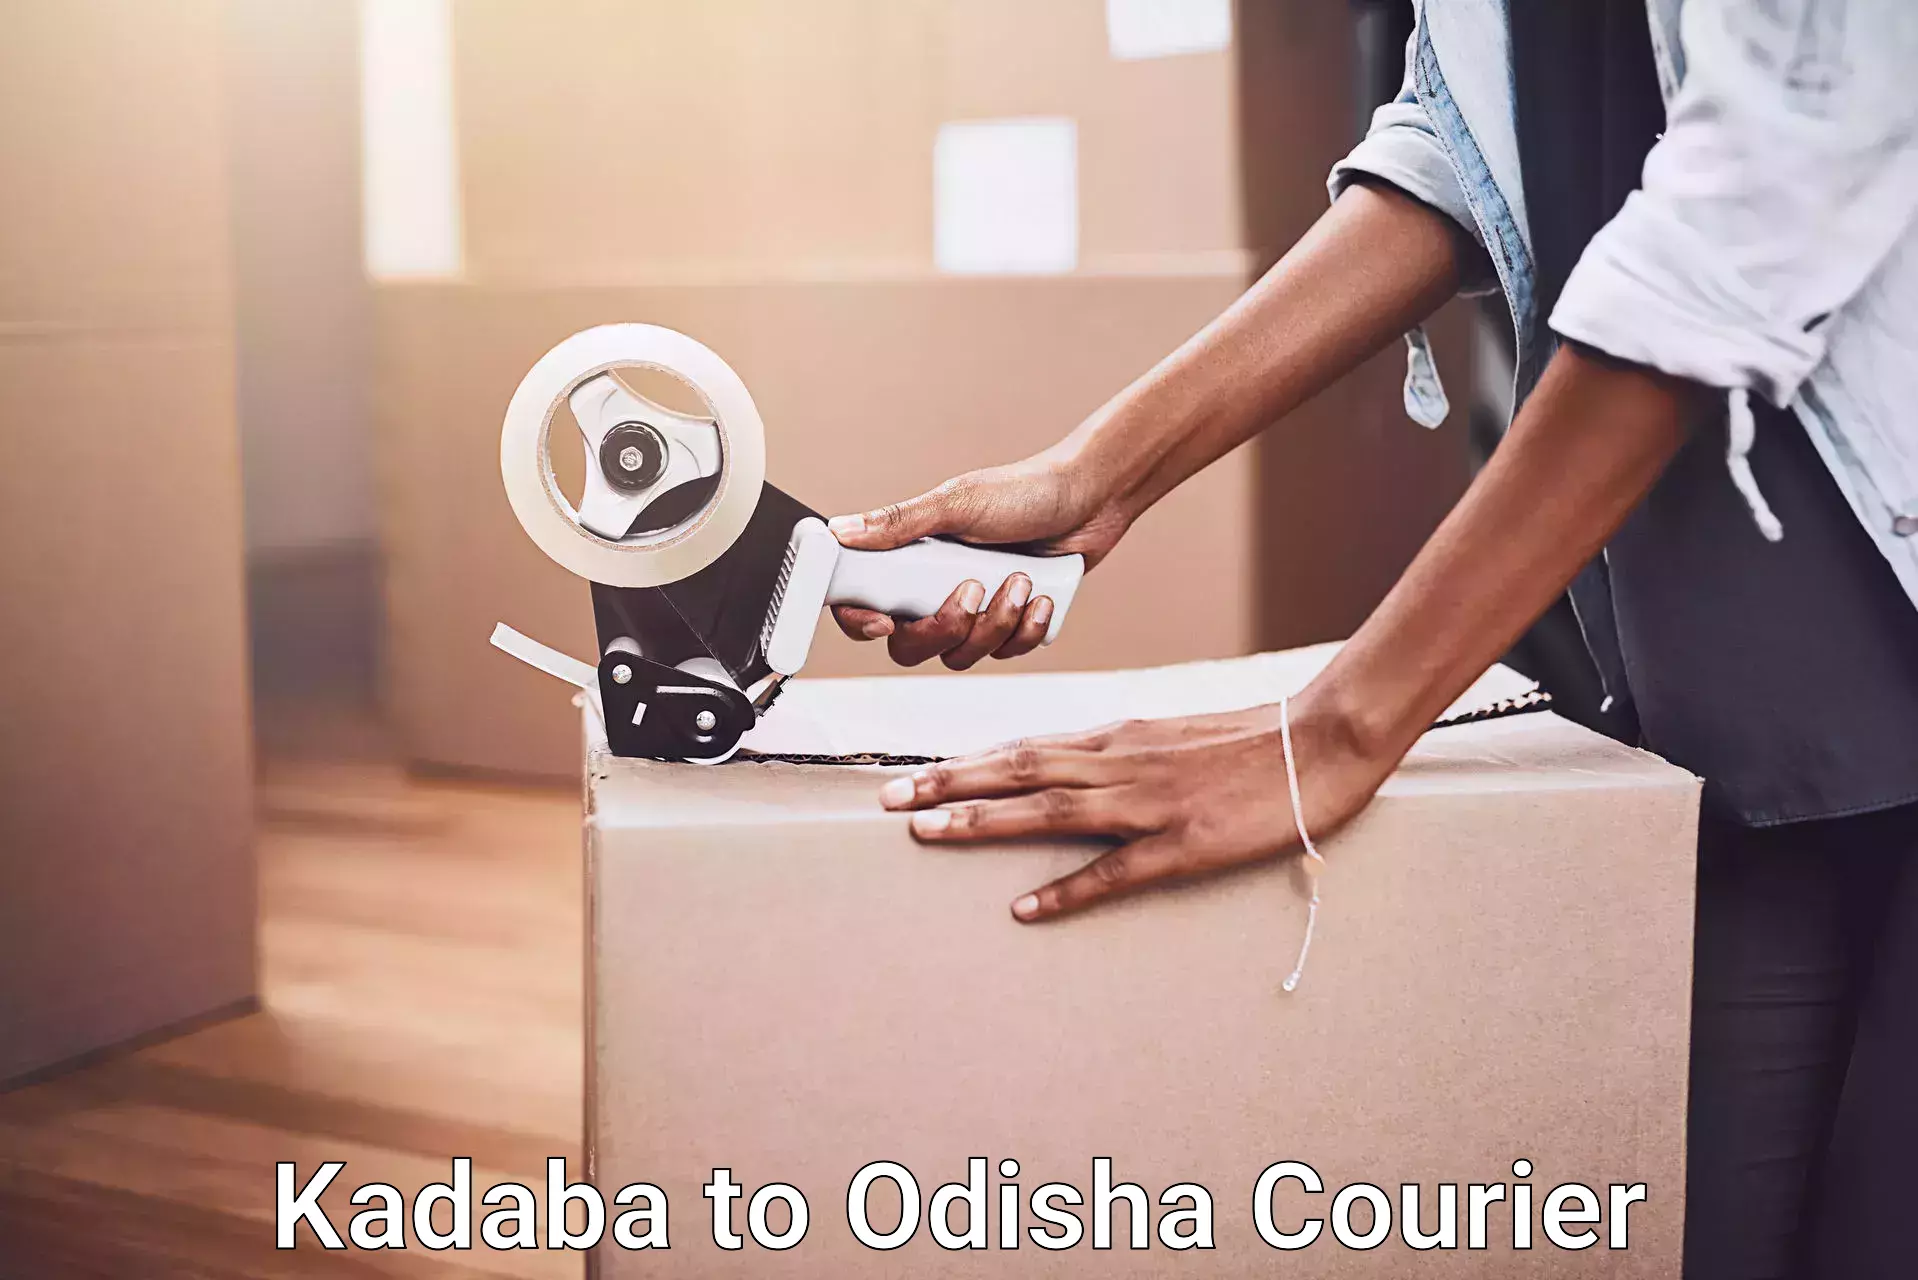 Efficient moving company Kadaba to Chatrapur